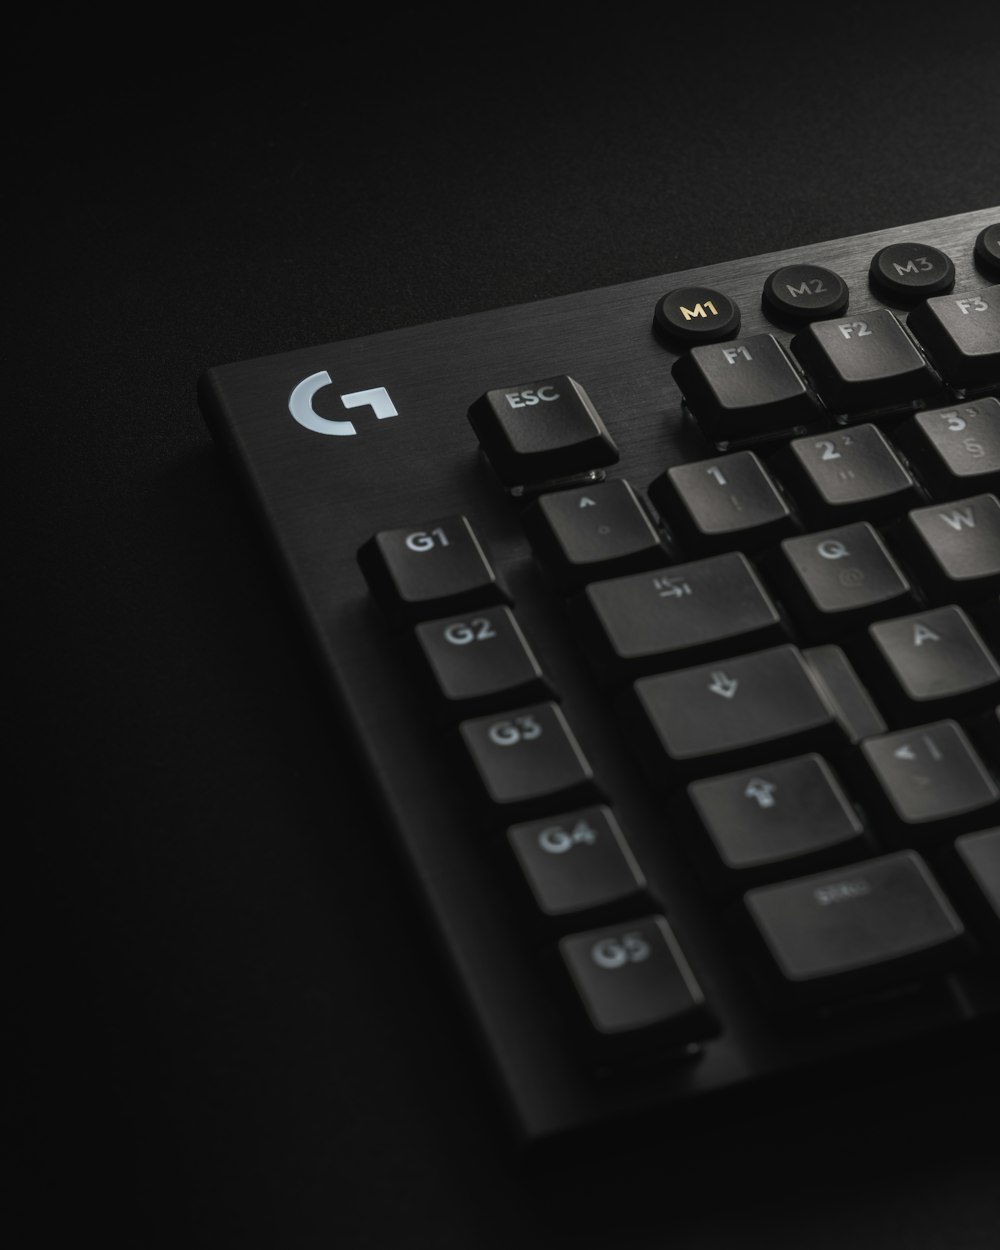 teclado de computador preto mostrando teclas numéricas